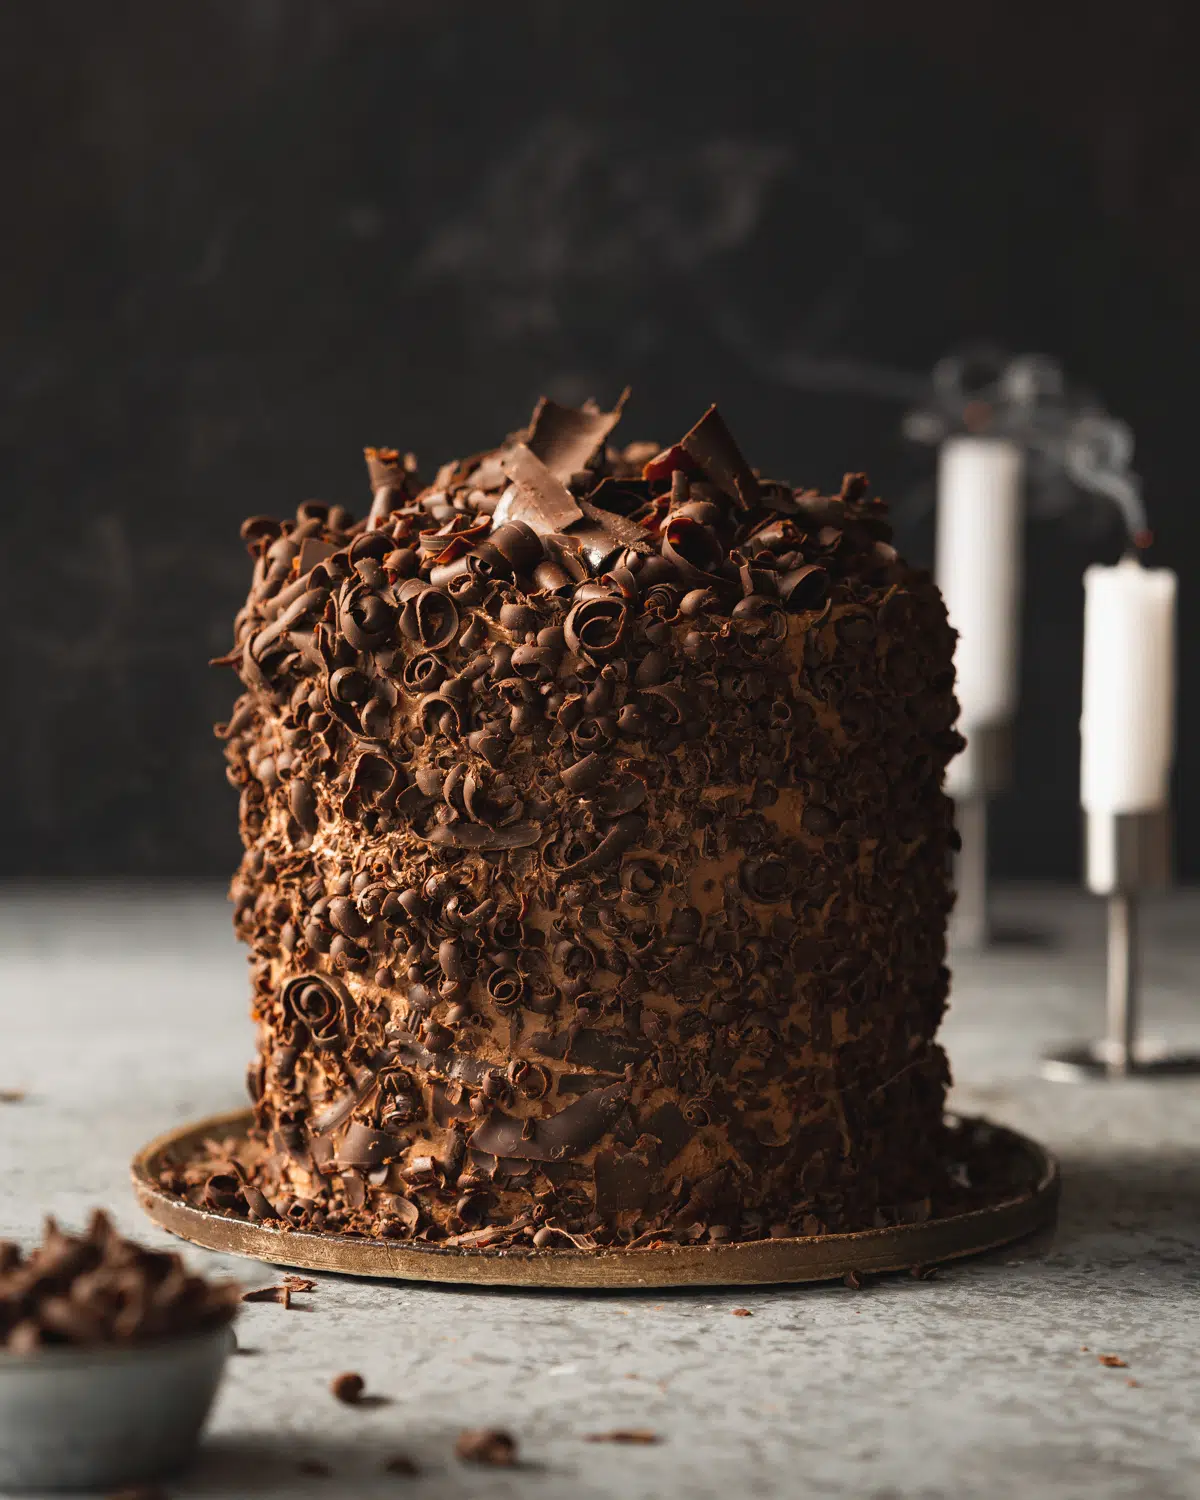 vegan chocolate cake with chocolate shavings and dark background.